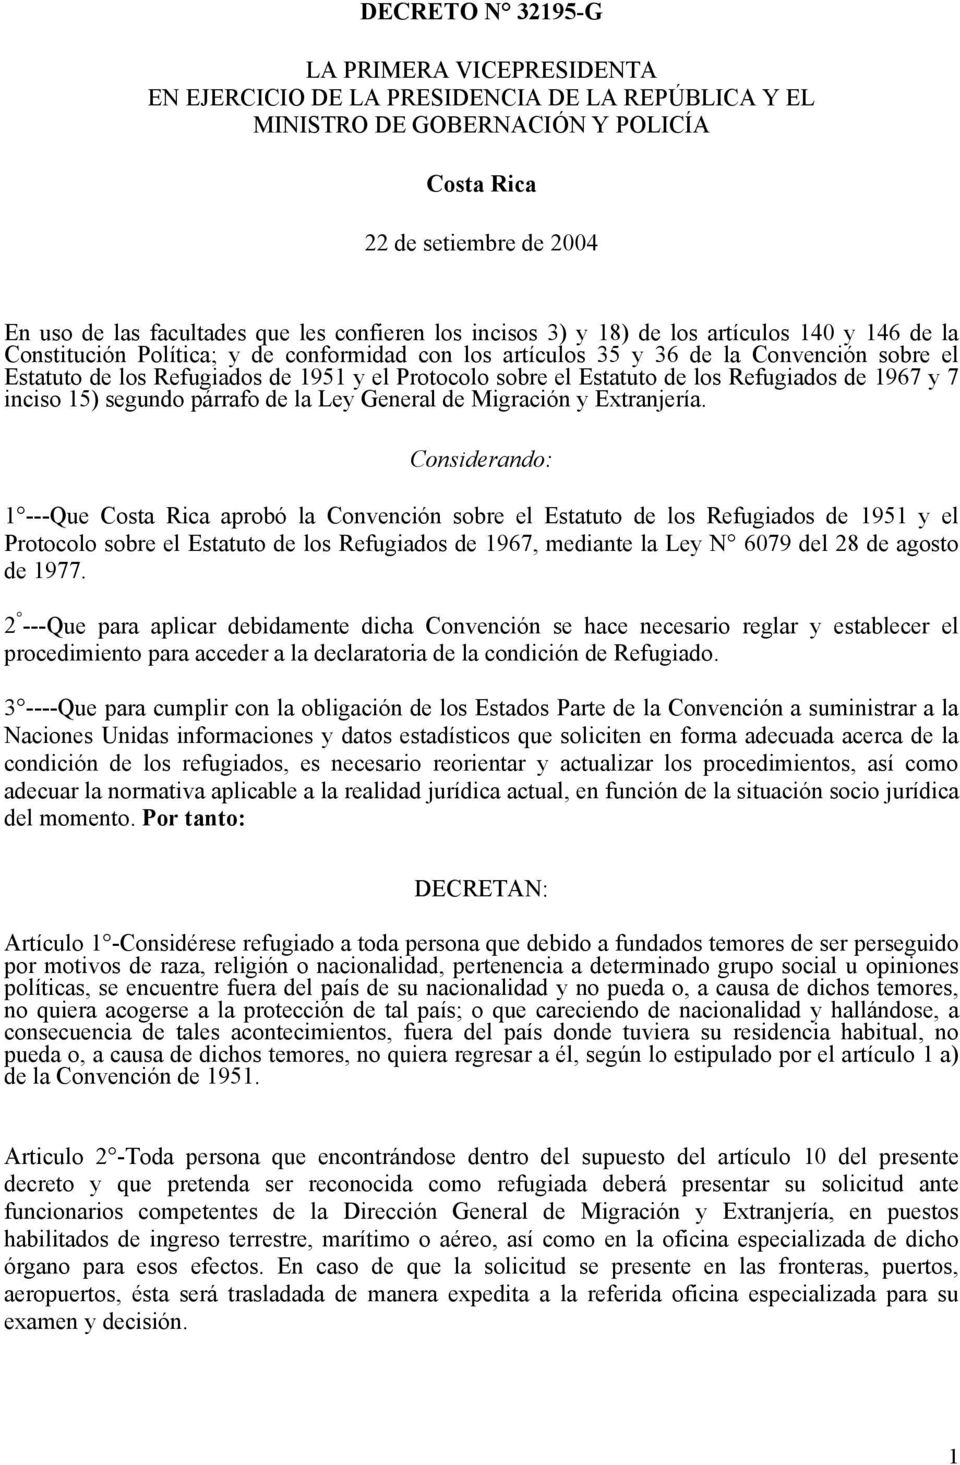 Protocolo sobre el Estatuto de los Refugiados de 1967 y 7 inciso 15) segundo párrafo de la Ley General de Migración y Extranjería.